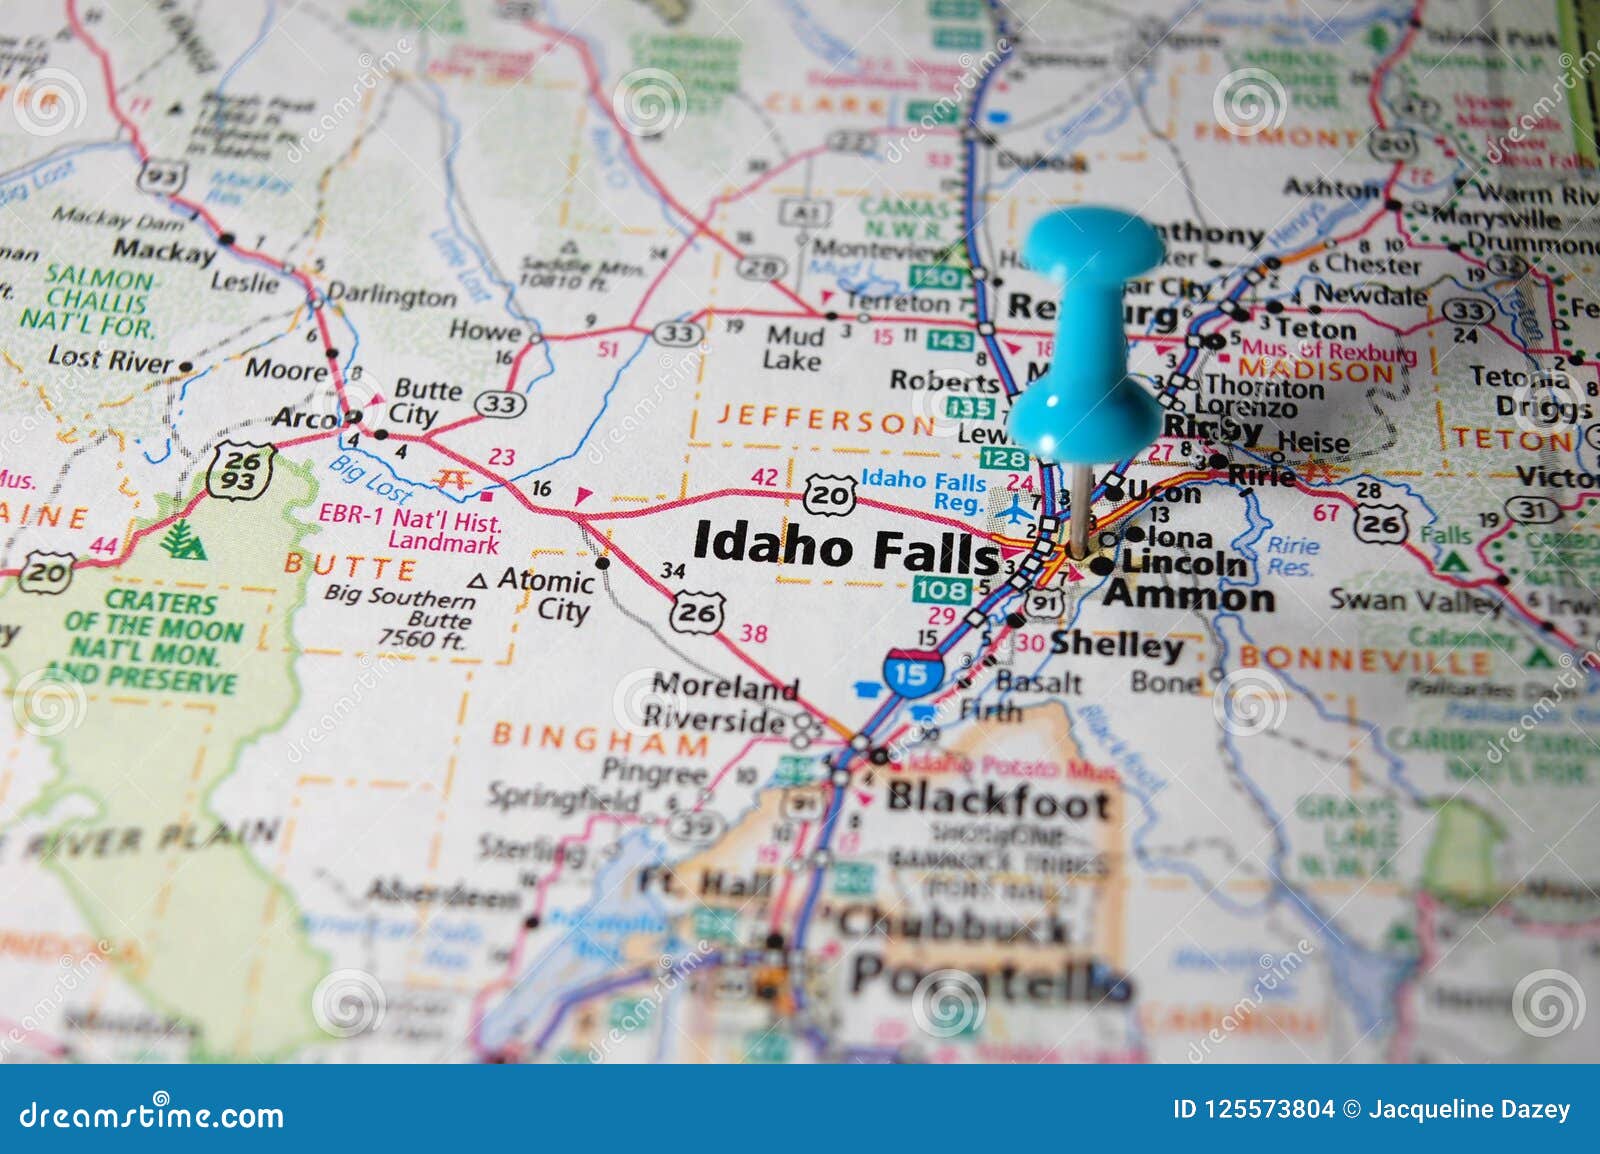 Idaho Falls, Idaho stock photo. Image of attraction - 125573804